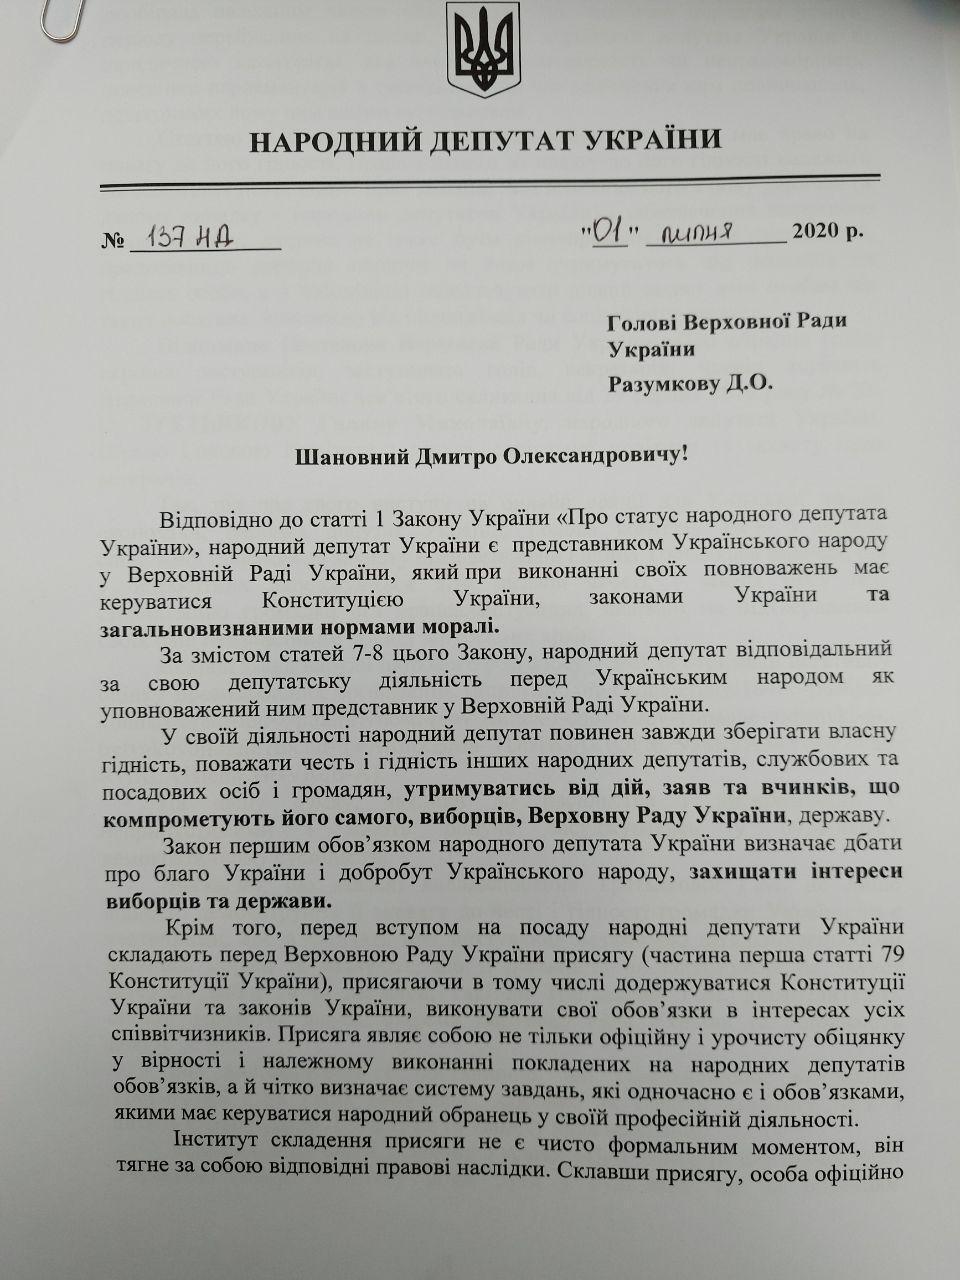 Обращение депутатов к Дмитрию Разумкова о снятии с должности Галины Третьяковой